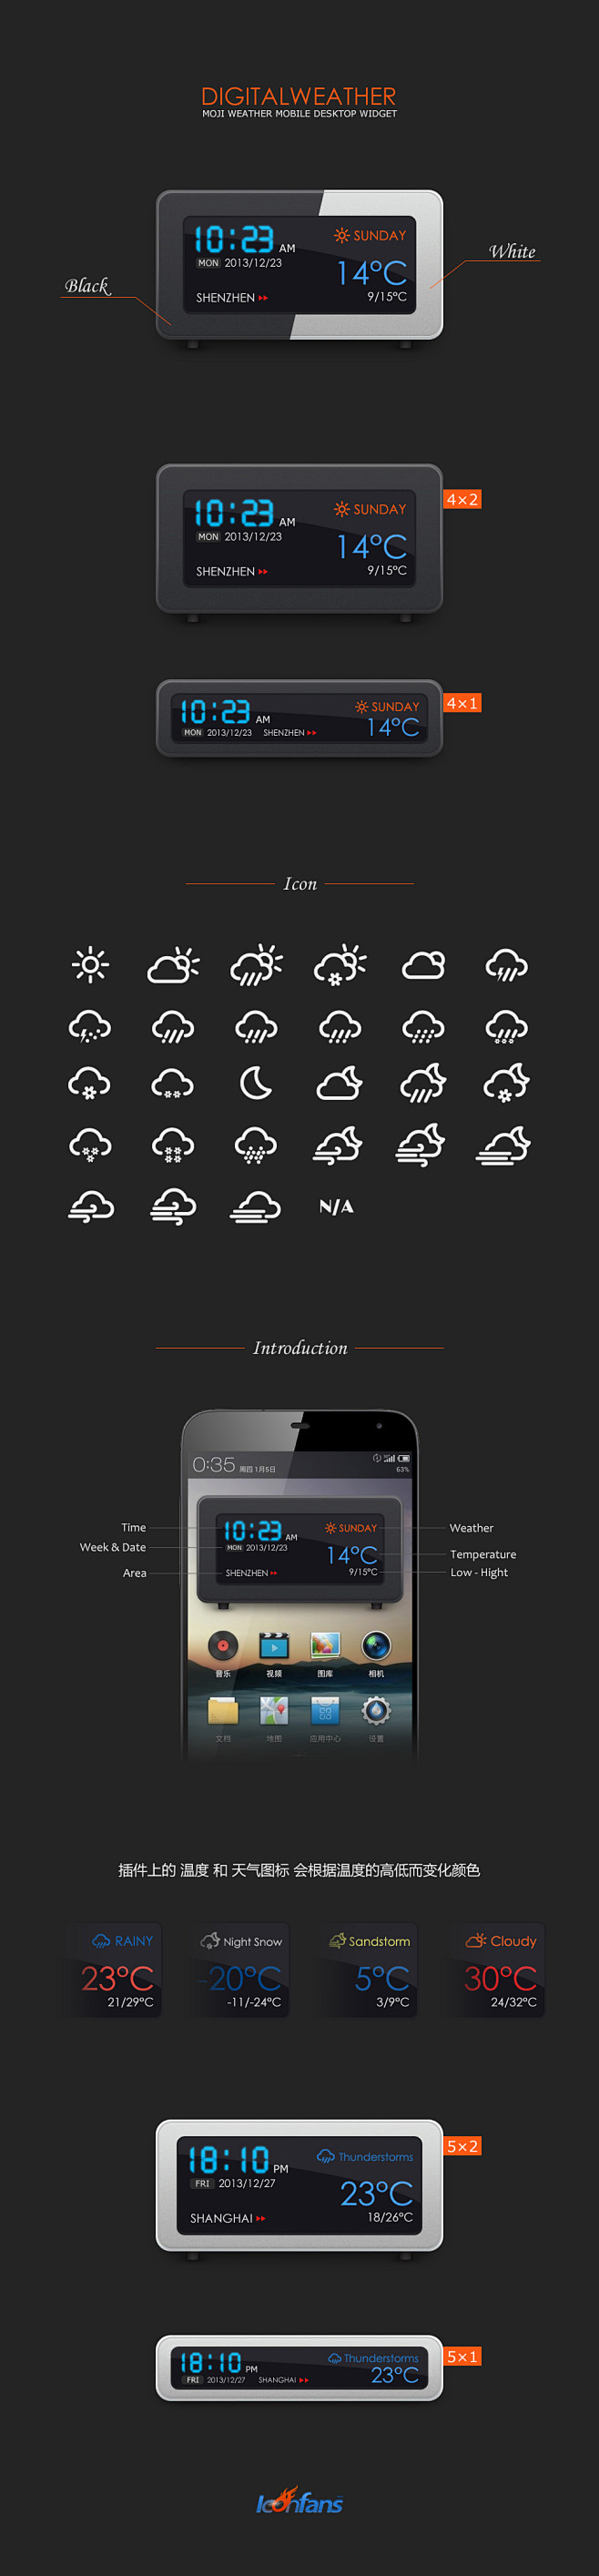 手机天气时间插件UI设计